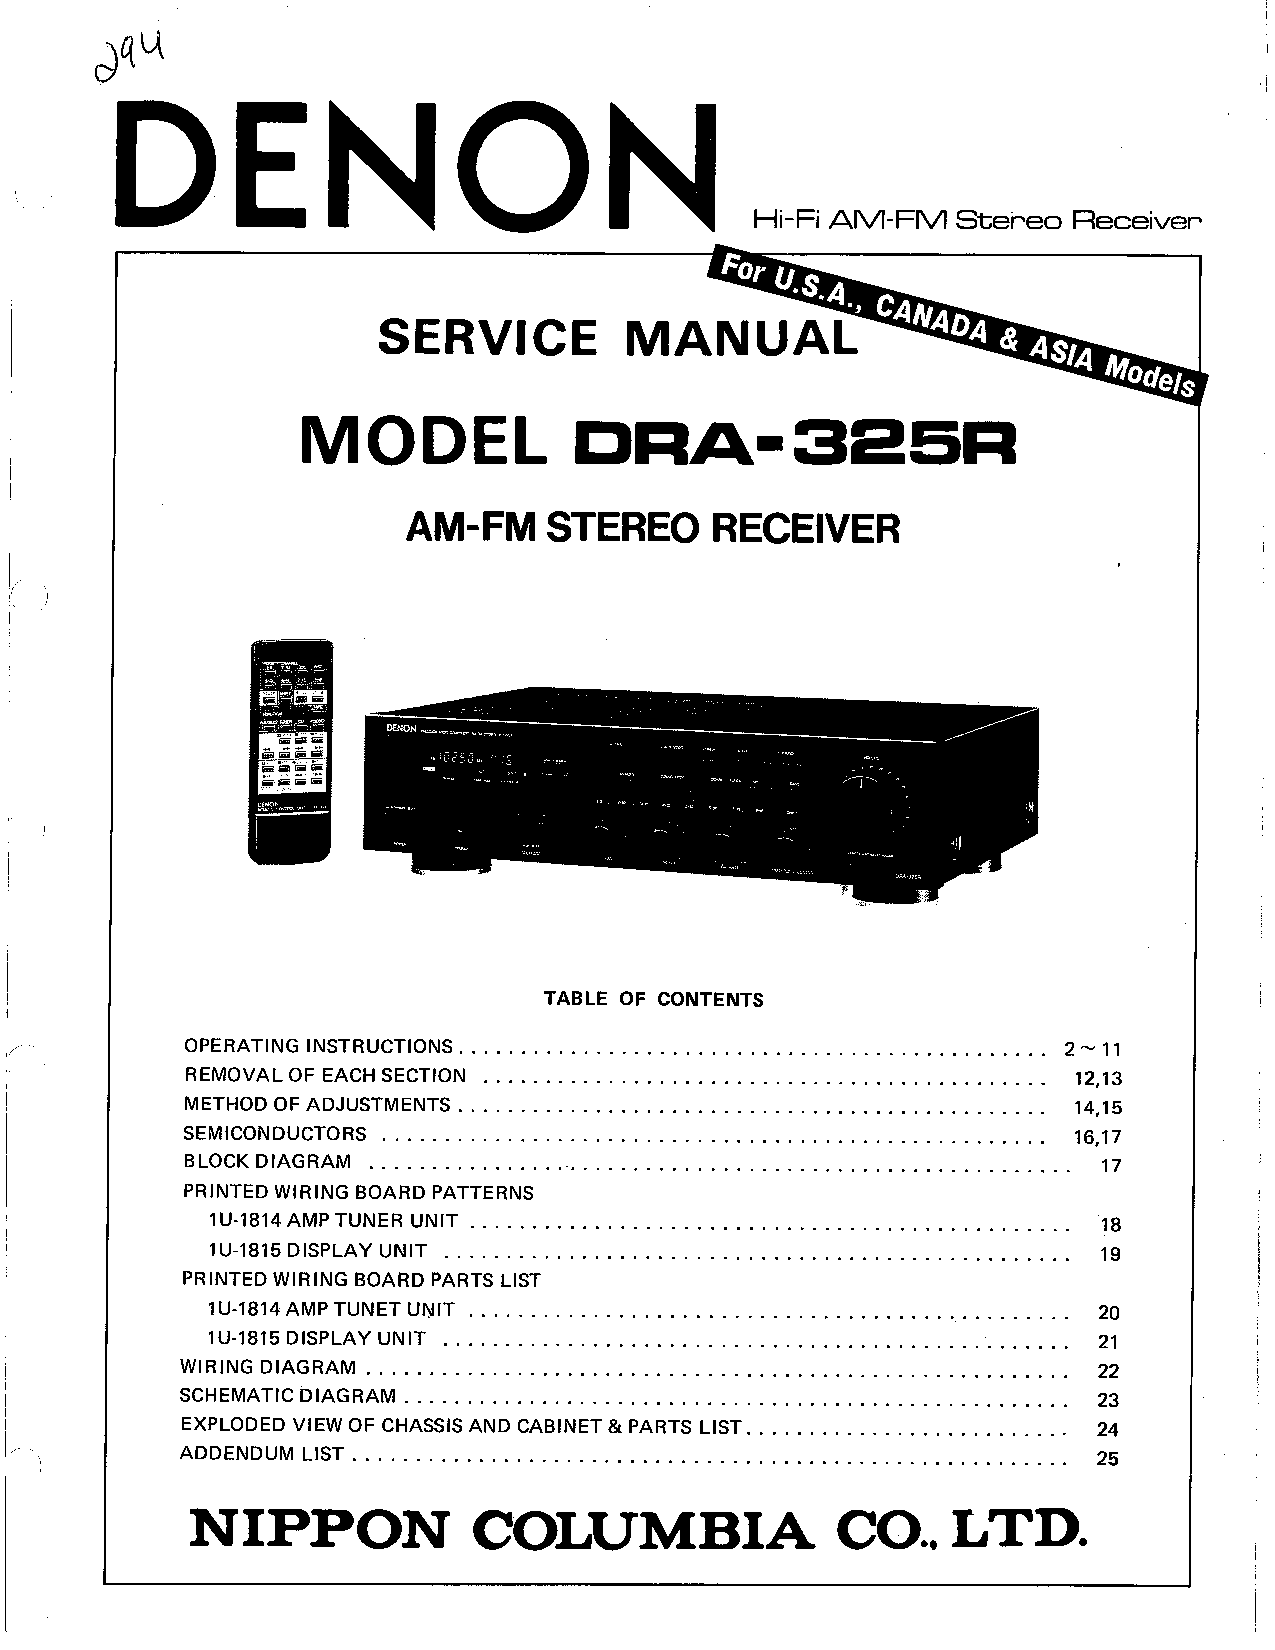 Denon DRA-325R Service Manual